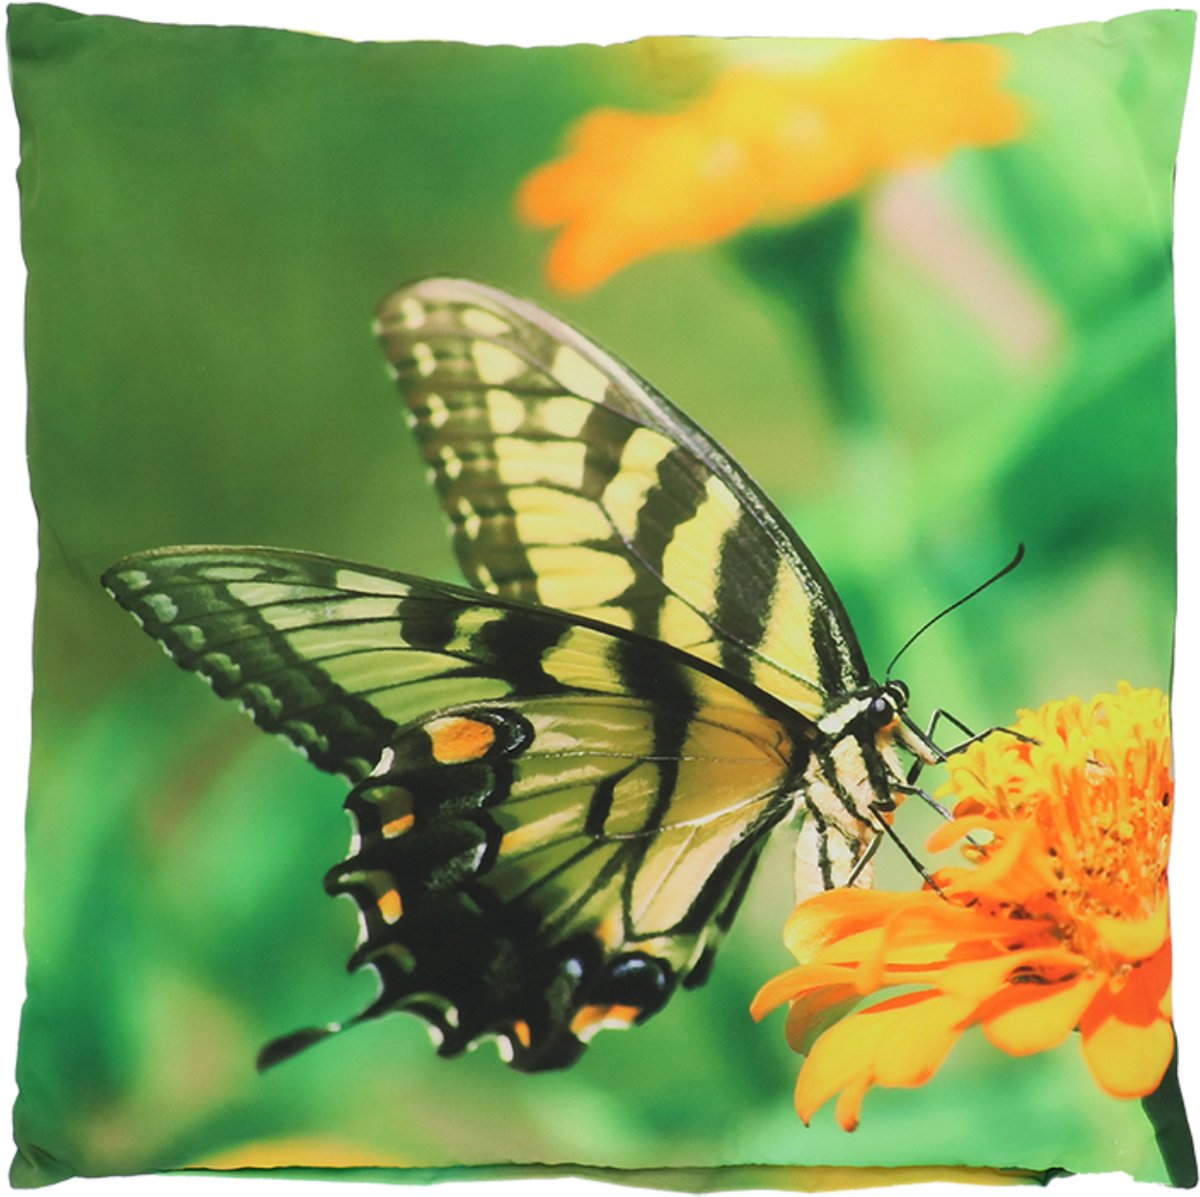 Buitenkussen vlinder koninginnenpage L 50 cm x 50 cm - tuinkussen - buitenkussen - outdoorkussen - waterafstotend - vlinderprint - cadeau - geschenk - Nieuwjaar - Kerst - verjaardag